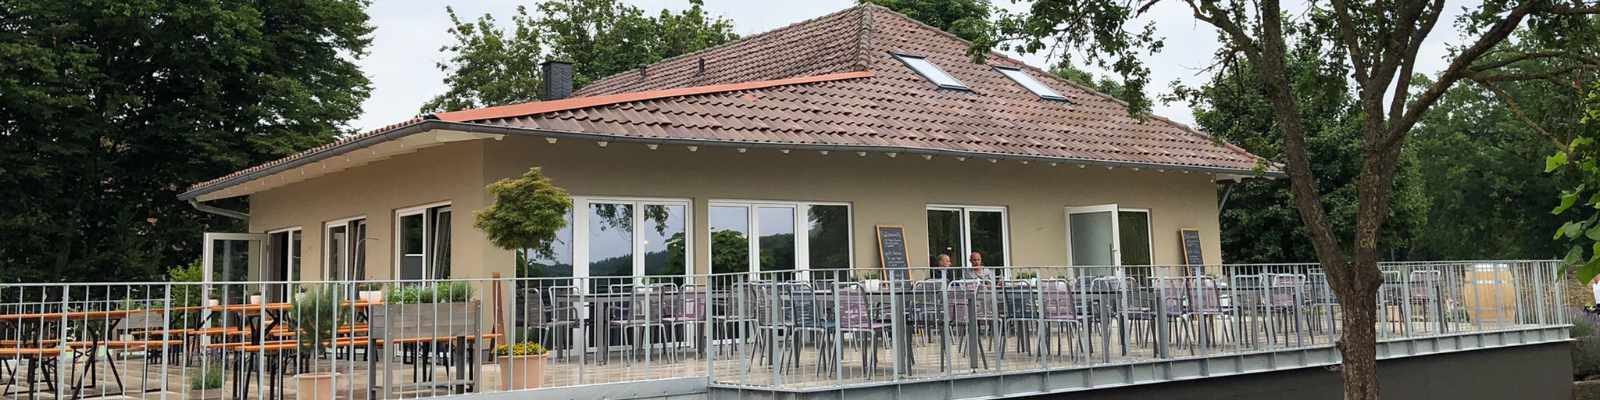 Das neue Clubrestaurant des GC Schloss Monrepos in der Außenansicht (photo by GC Schloss Monrepos) 